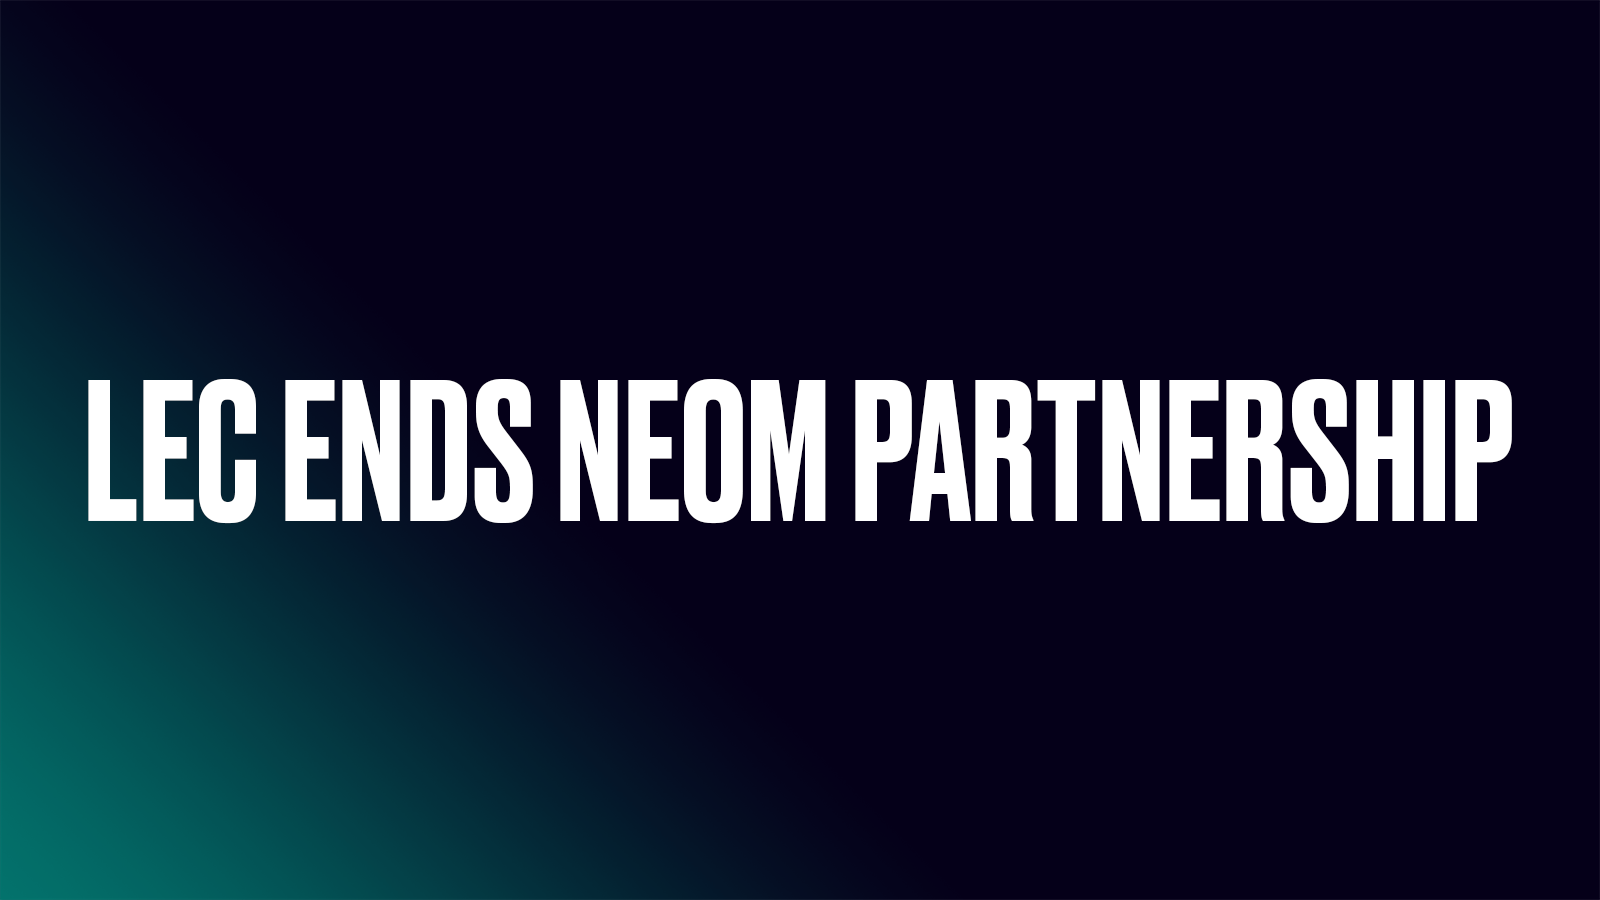 新合作伙伴引争议 LEC宣布终止与NEOM合作